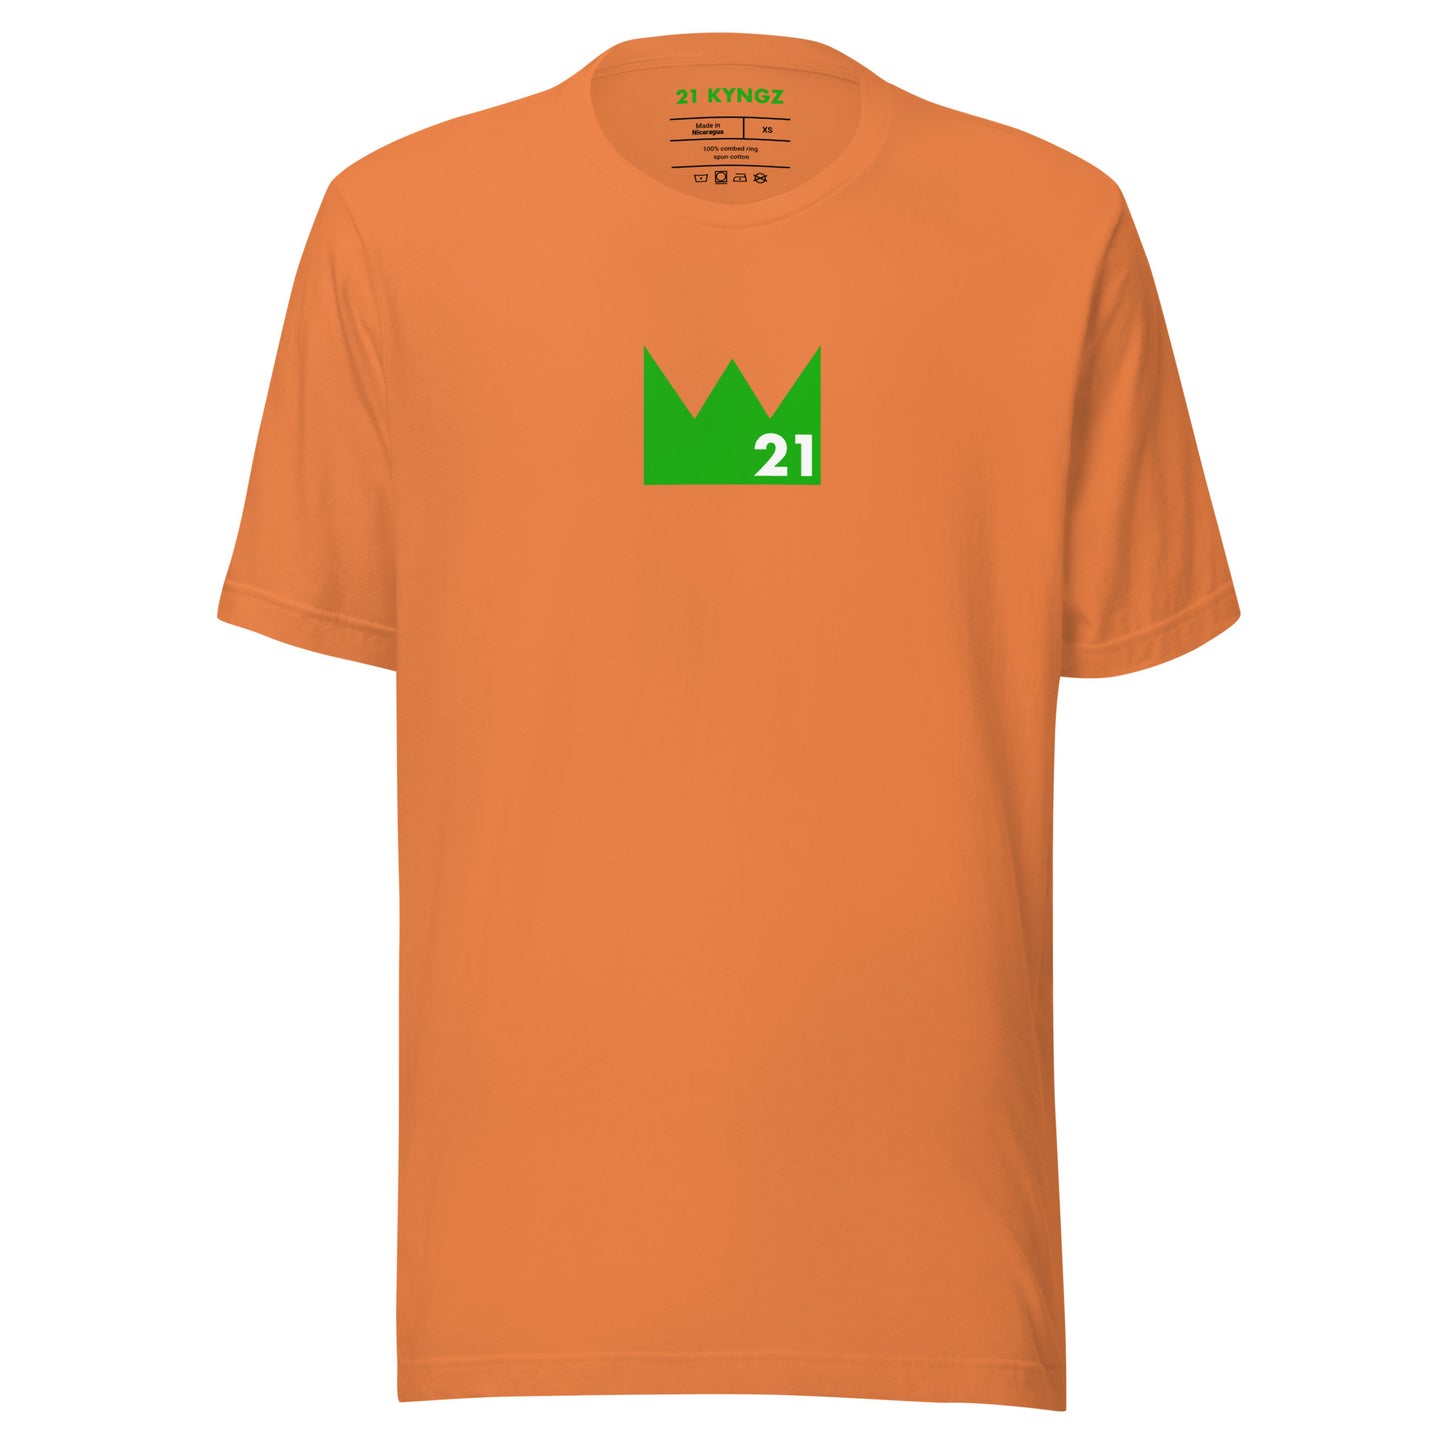 Crown 21 (Gr) T-shirt